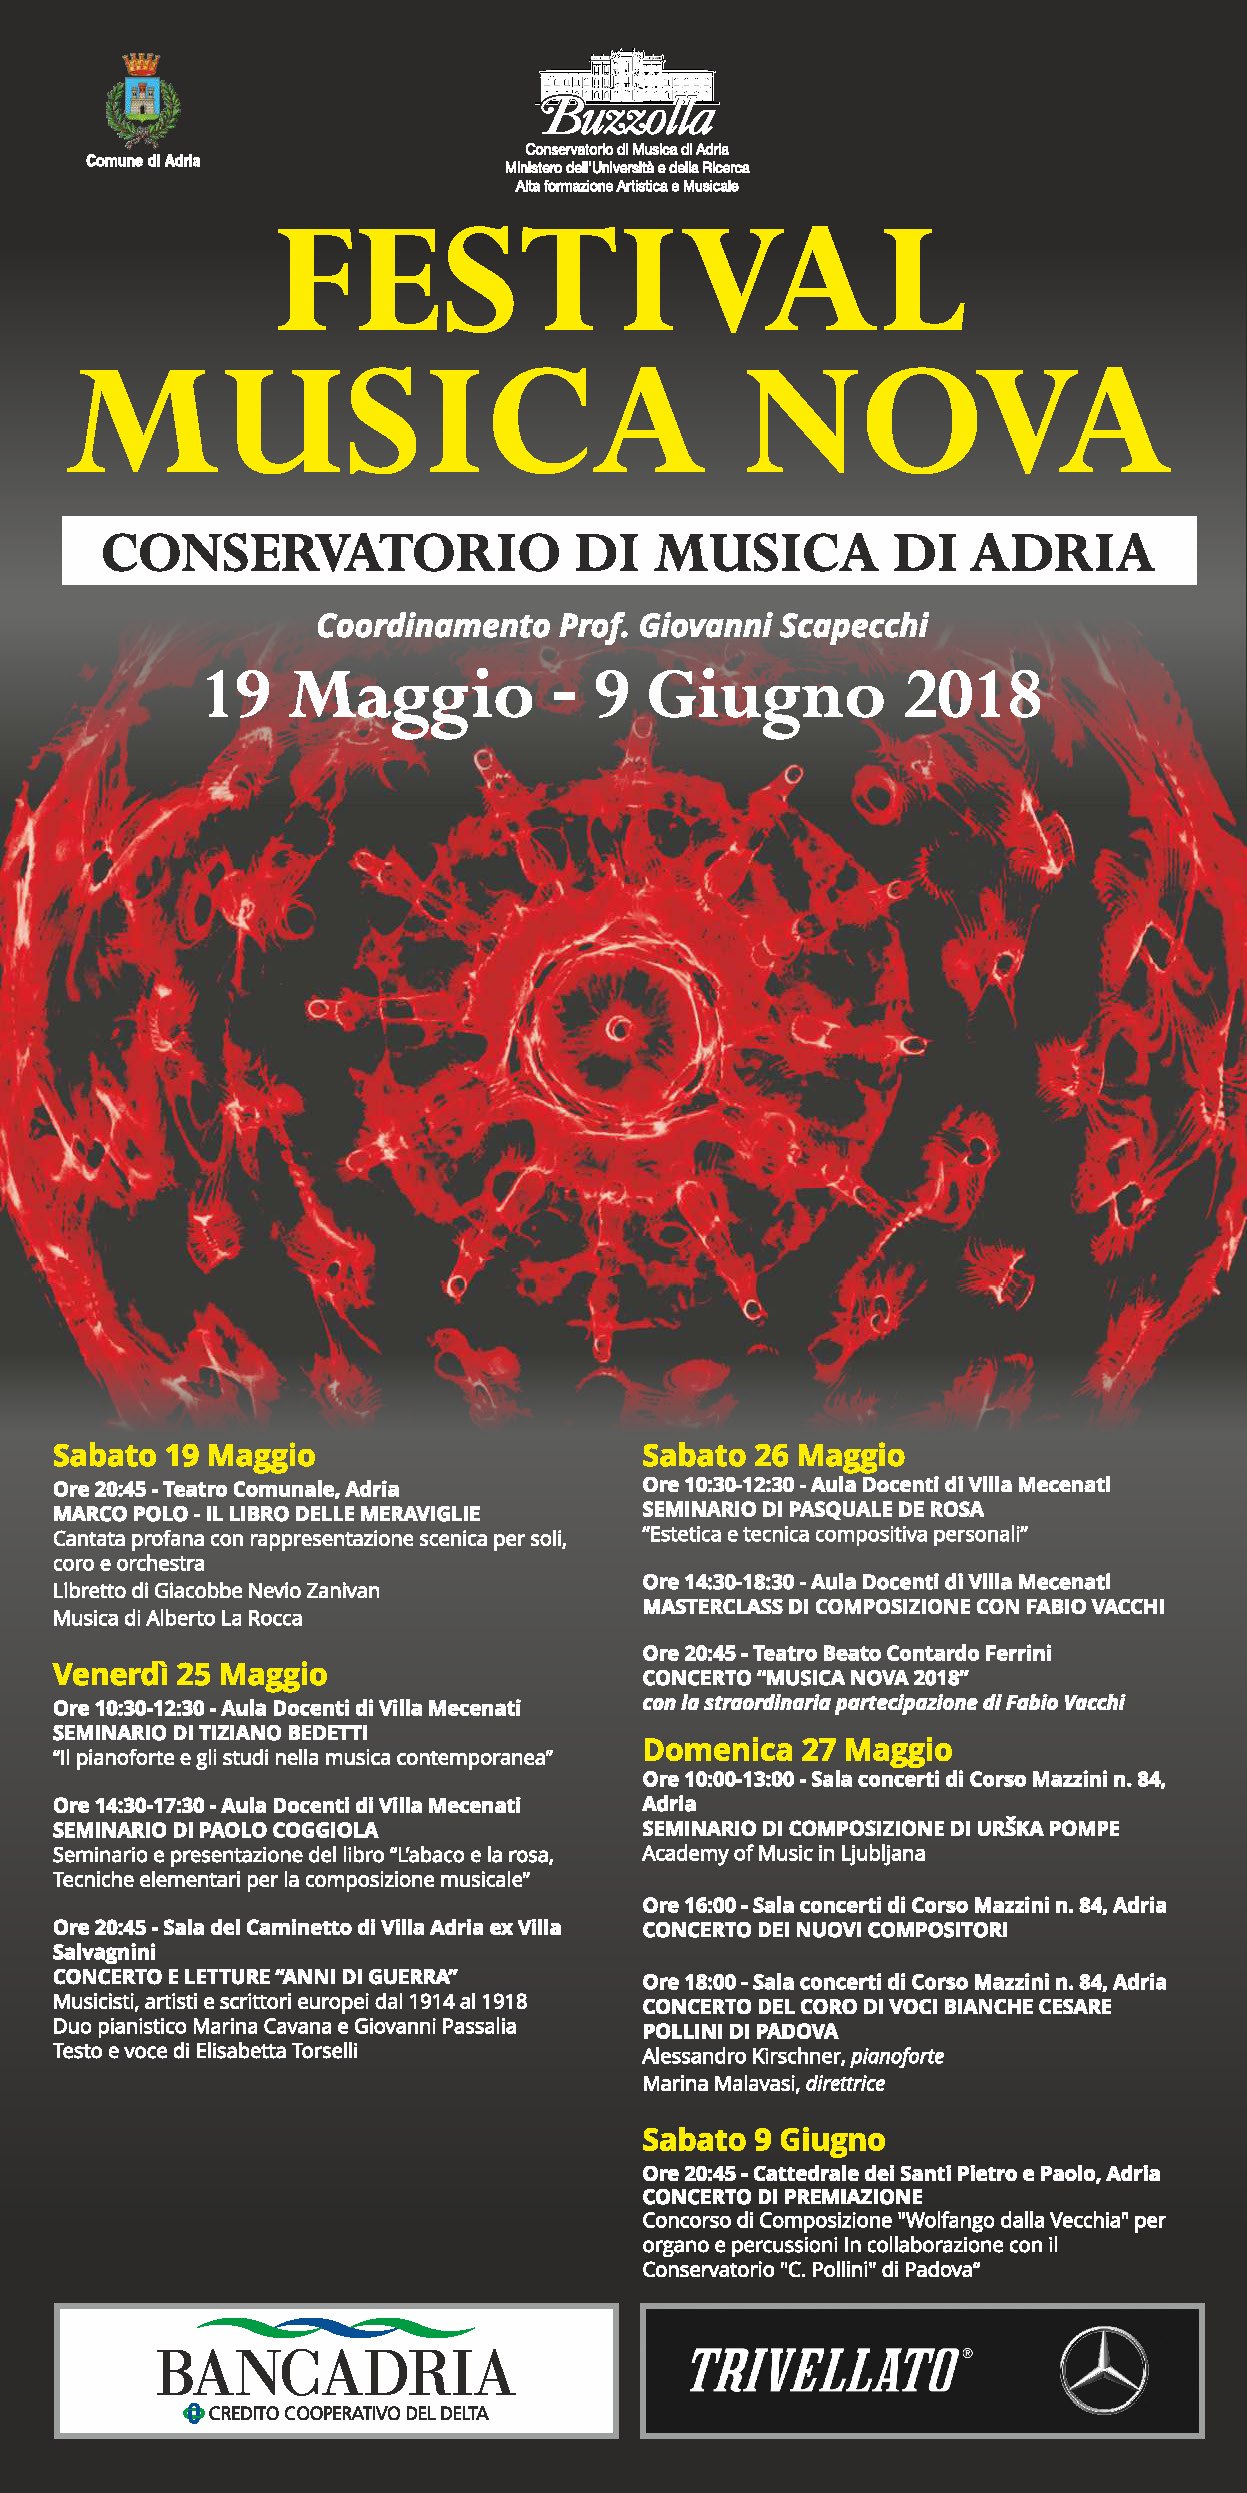 Festival Musica Nova 2018, 19 Maggio – 9 Giugno 2018,